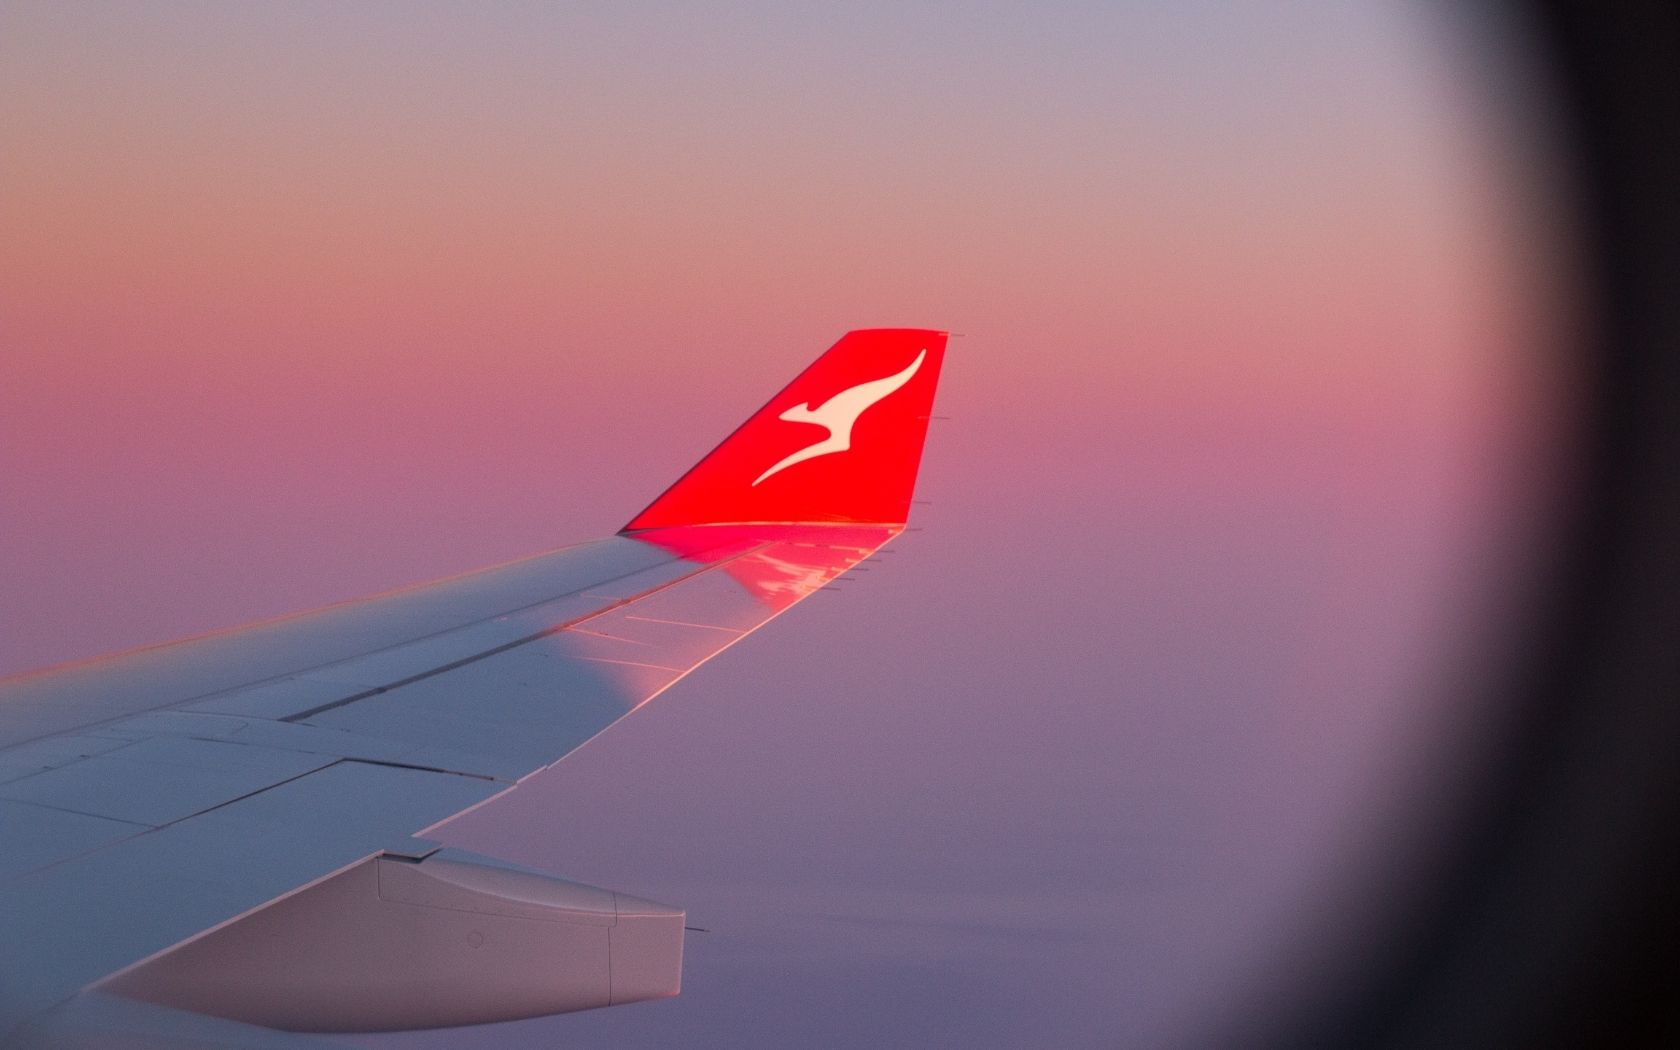 wing of qantas plane during pink sunset